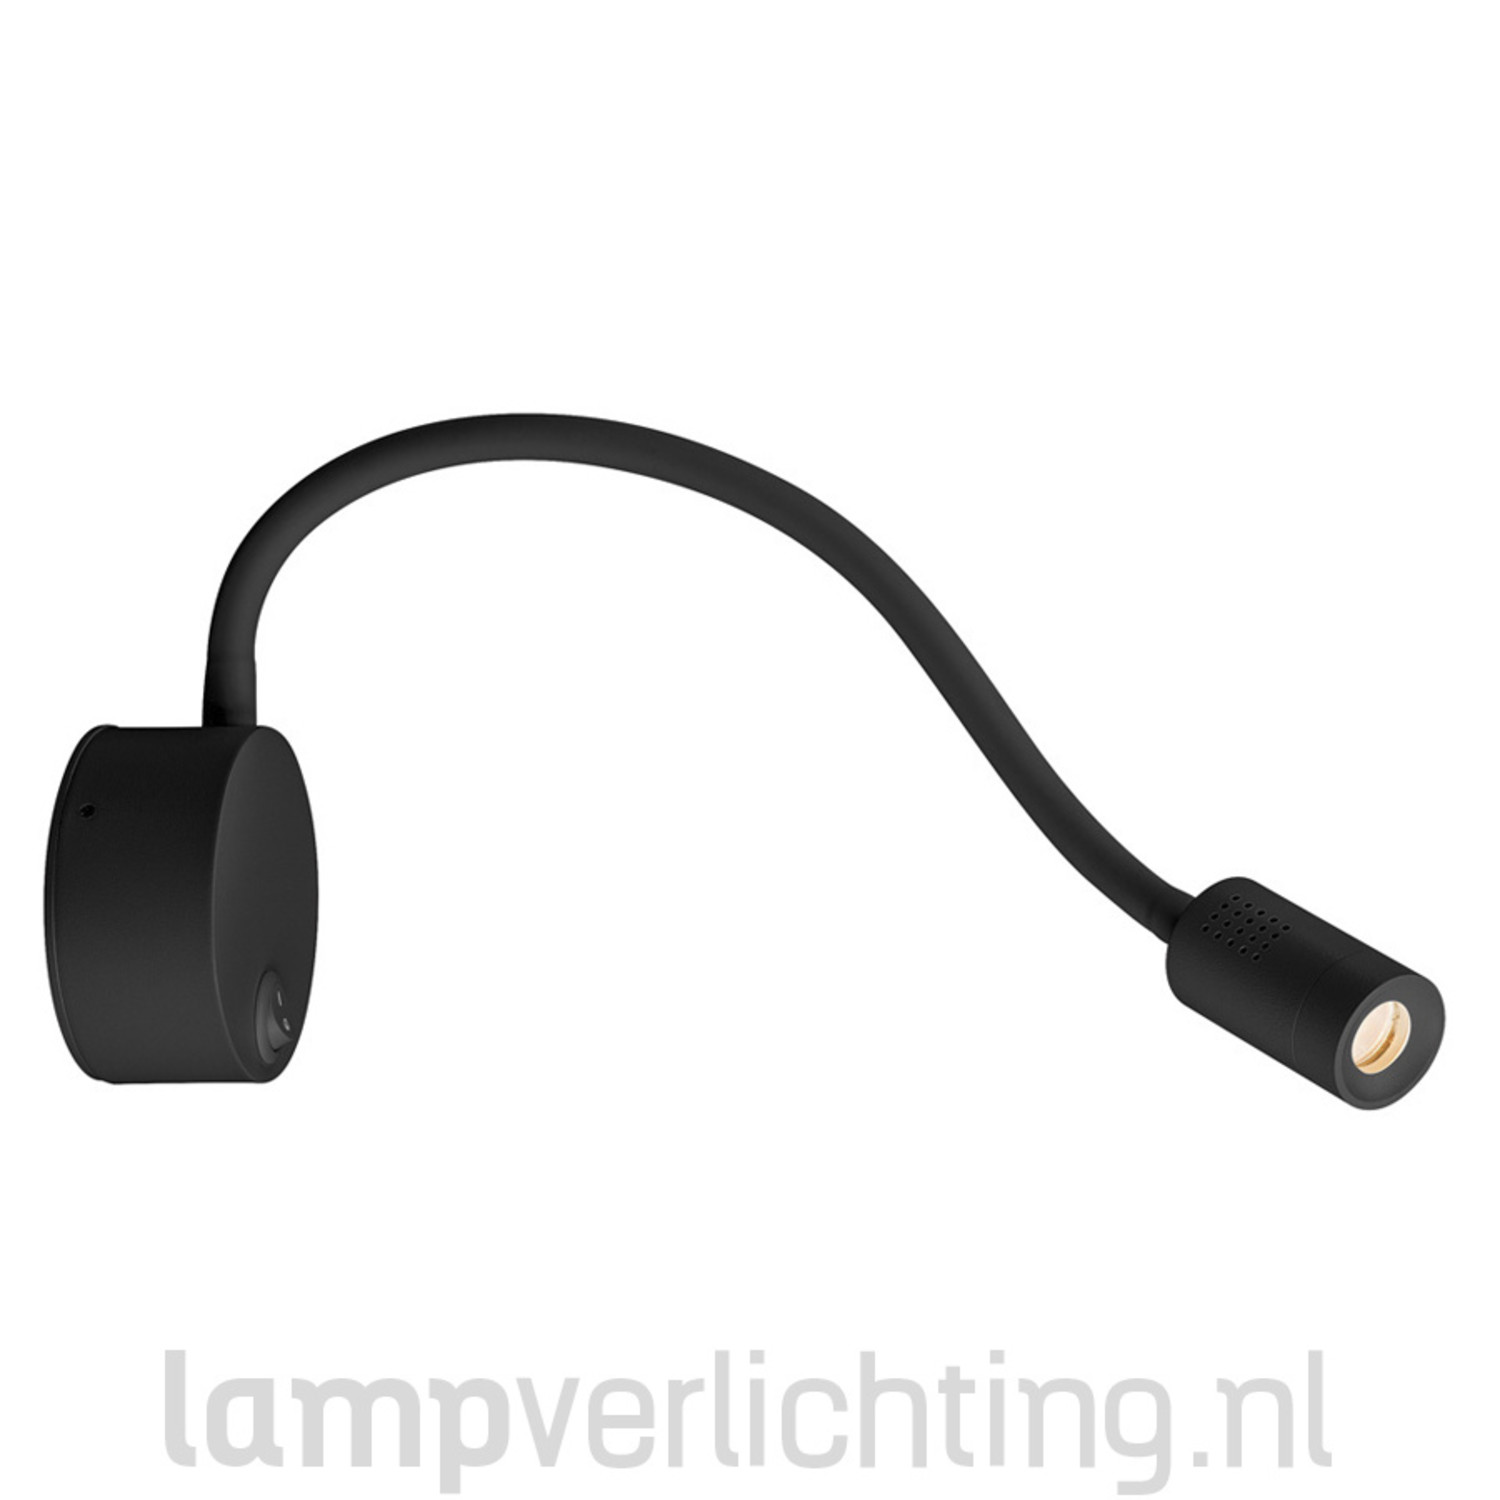 LED Leeslamp Flexibel met schakelaar - zwart of Duurzaam - LampVerlichting.nl